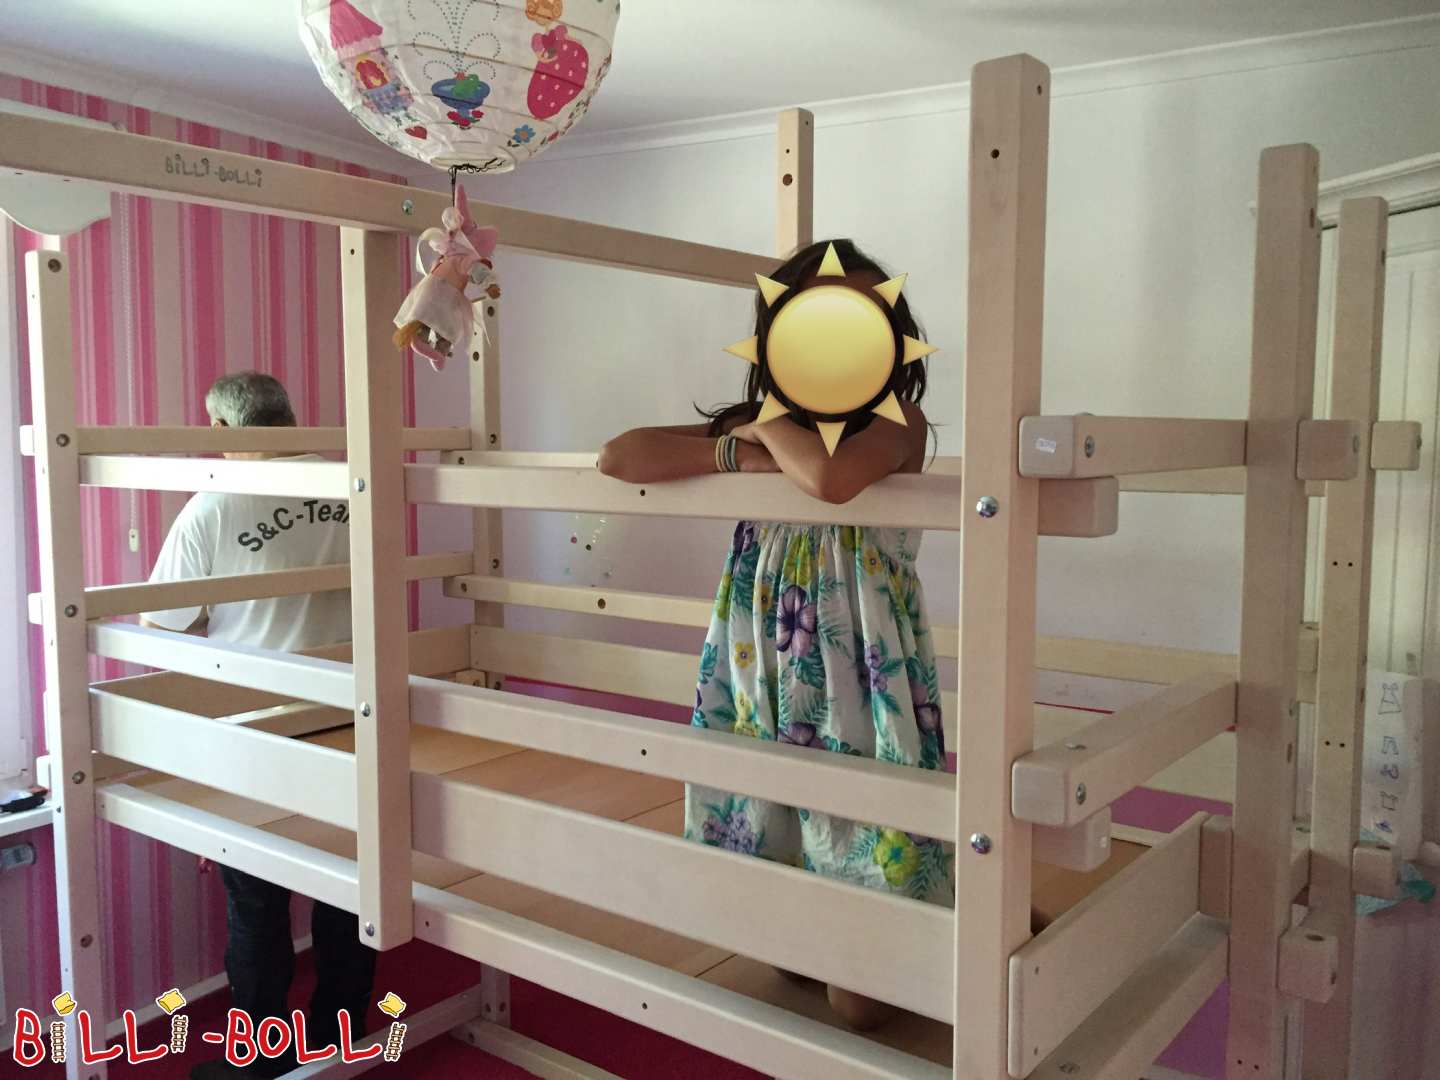 Bēniņu gulta 100x200 balta dižskābarža glazēta ar rotaļu grīdu (Kategorija: Bēniņu gulta, kas aug kopā ar bērnu lietotu)